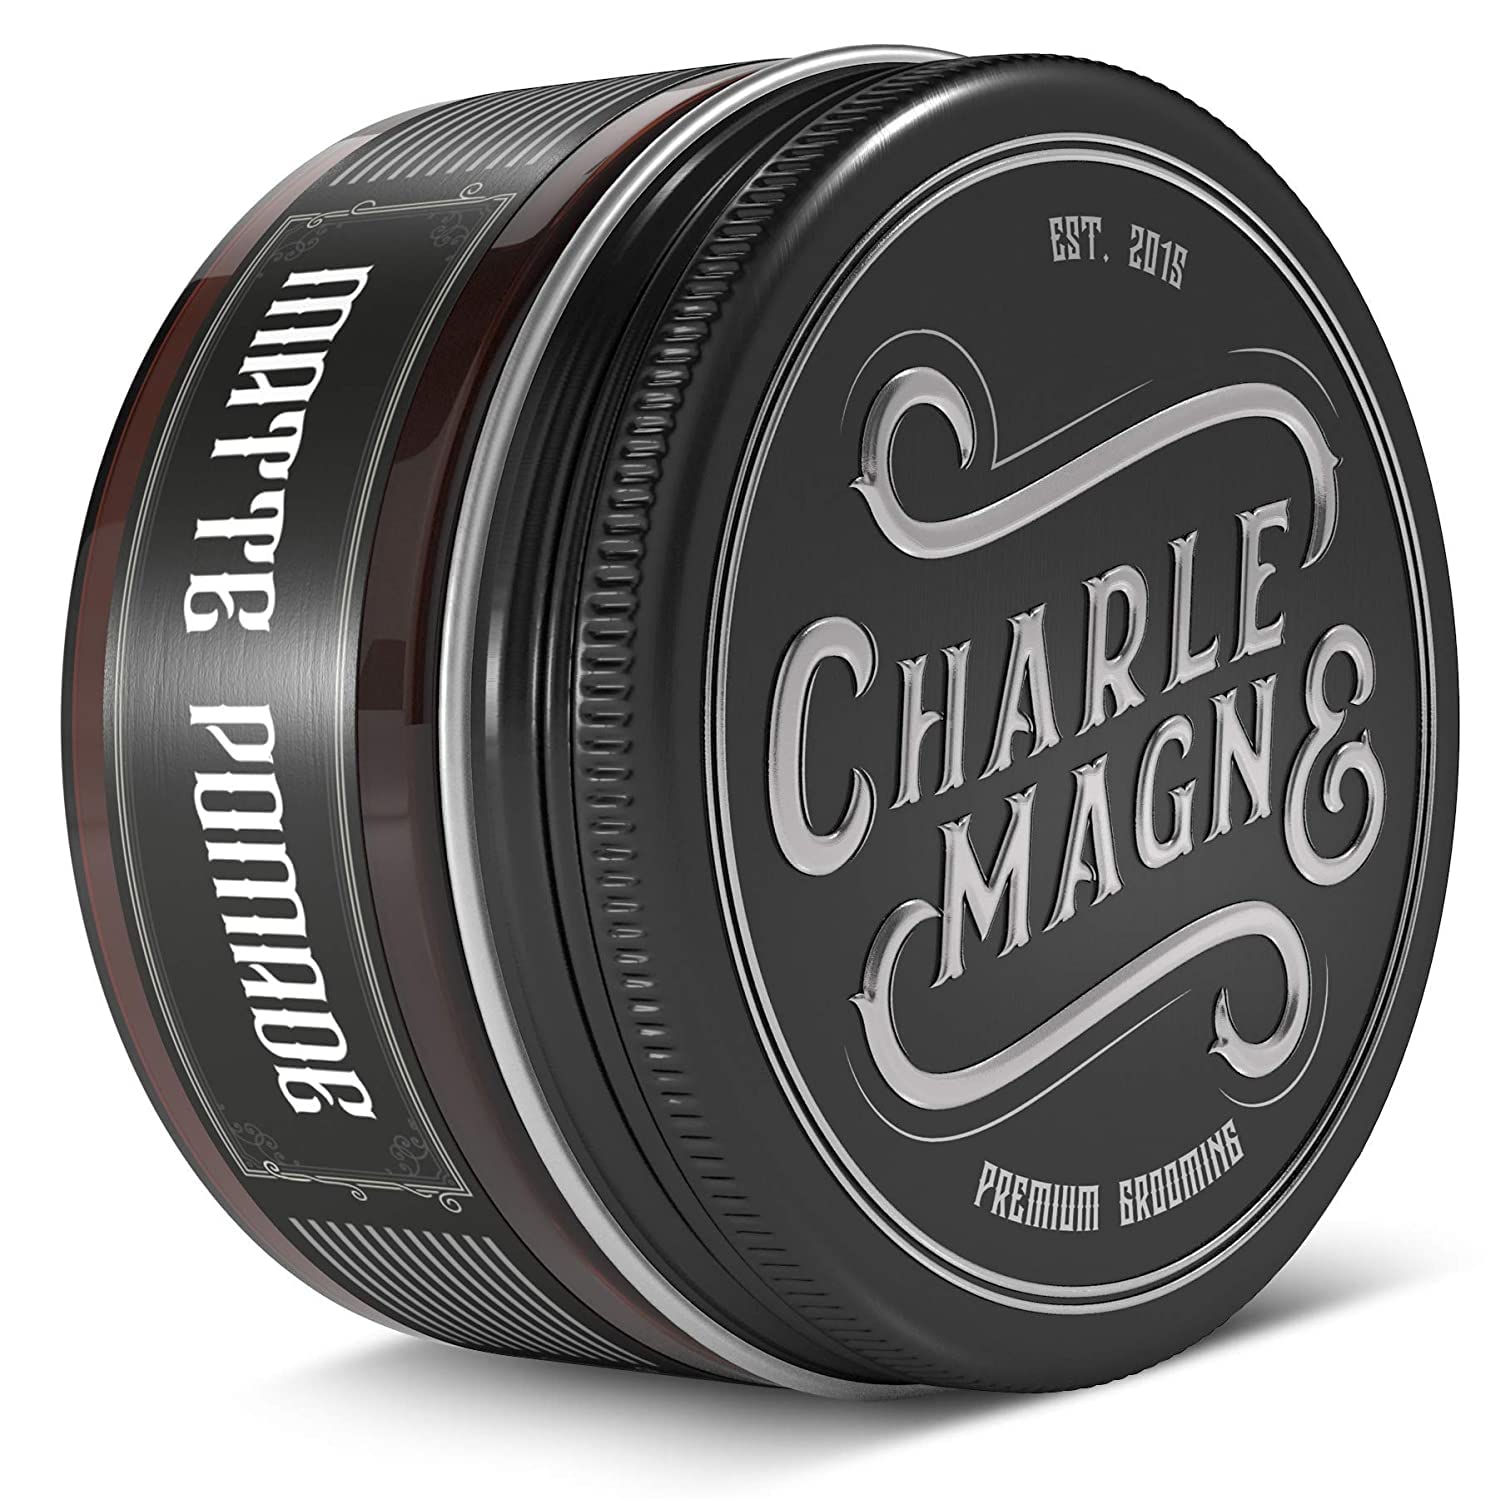 Charlemagne Premium Matte Pomade – Strong Hold – Elegant Fragrance – Matt Look Finish for the Hair – Matt Hair Wax for Men / Men – 100 ml – Hair Cream Made in the UK – Barber Quality